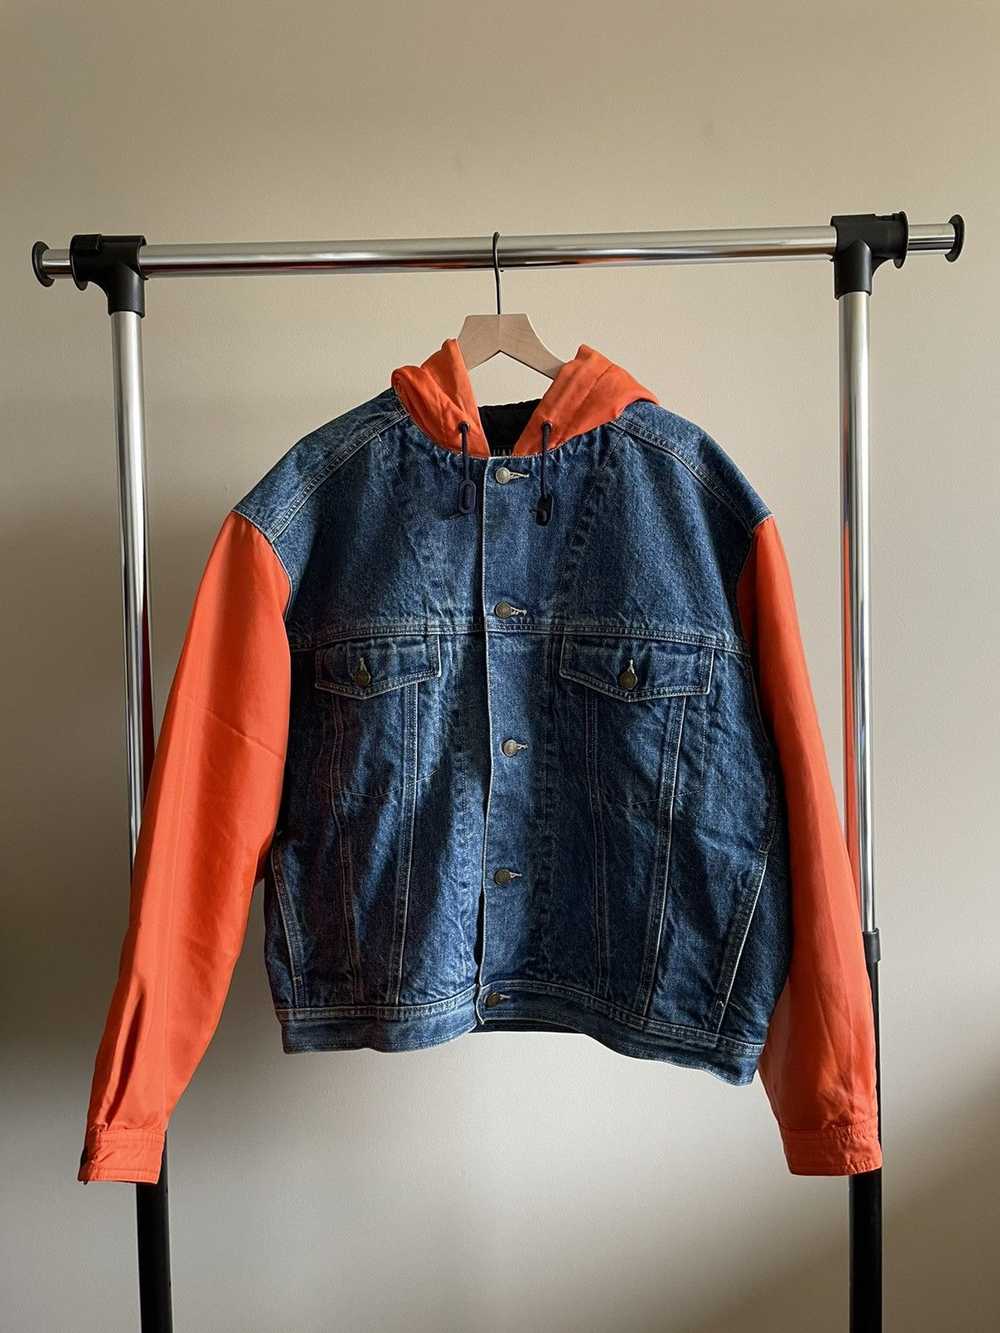 Gap × Vintage Gap Denim Jacket worn by Drake - image 4